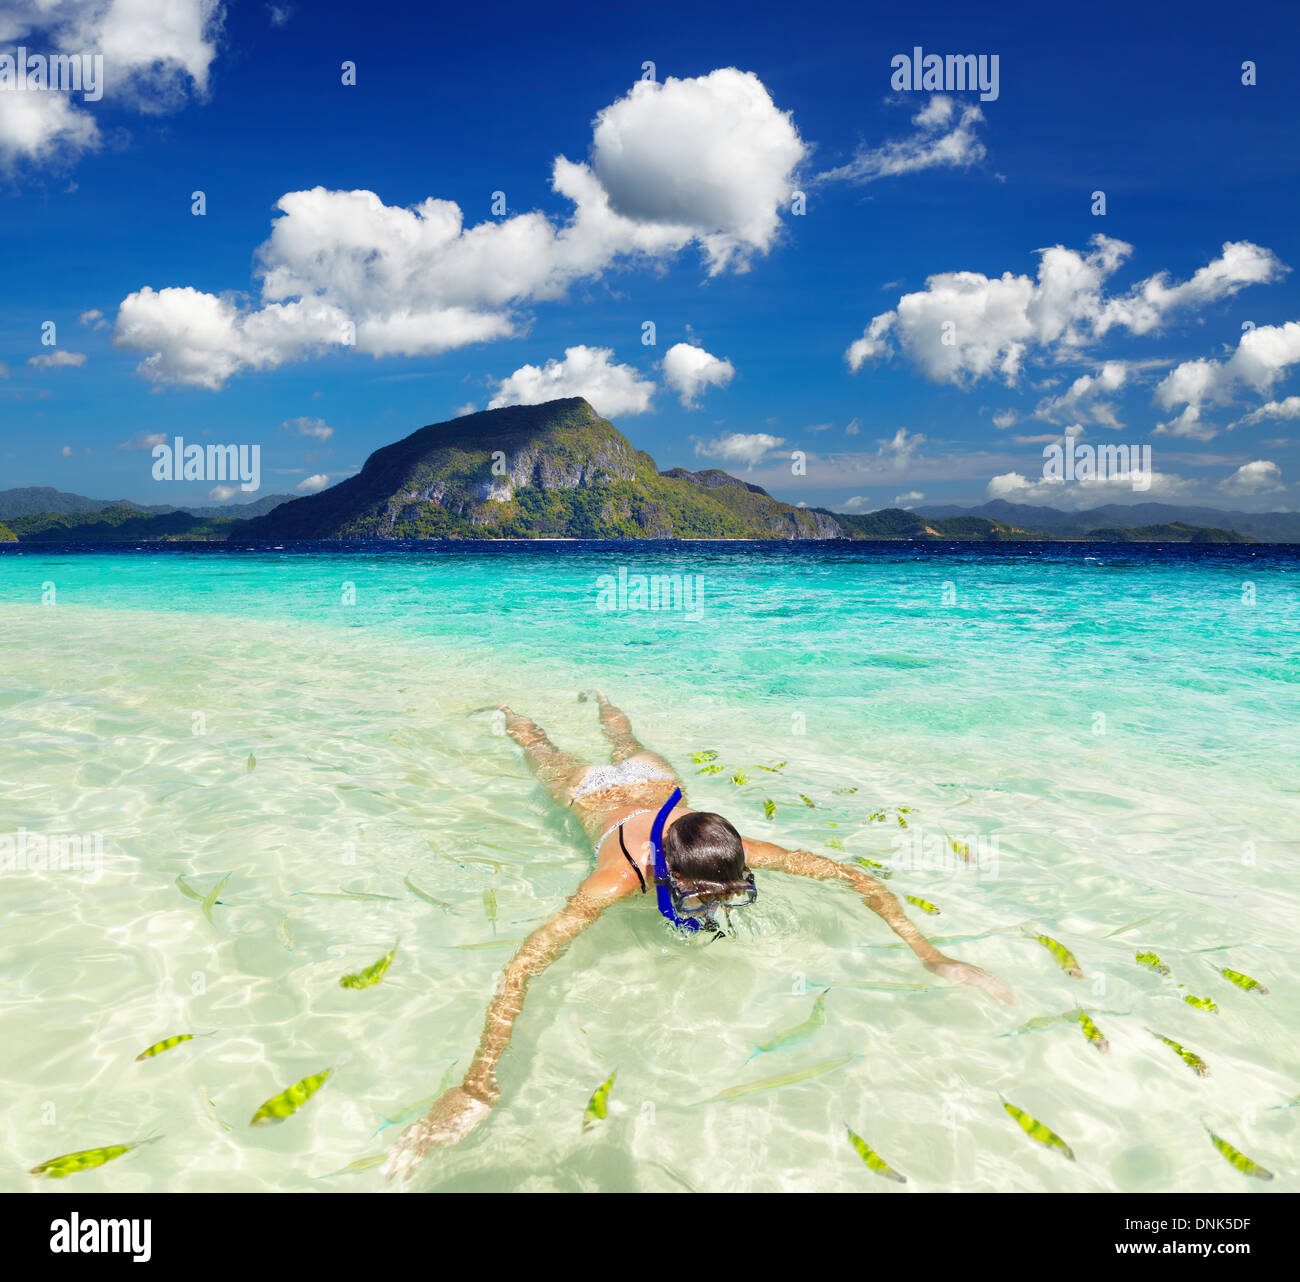 Playa Tropical, mujer nadar con snorkel Foto de stock